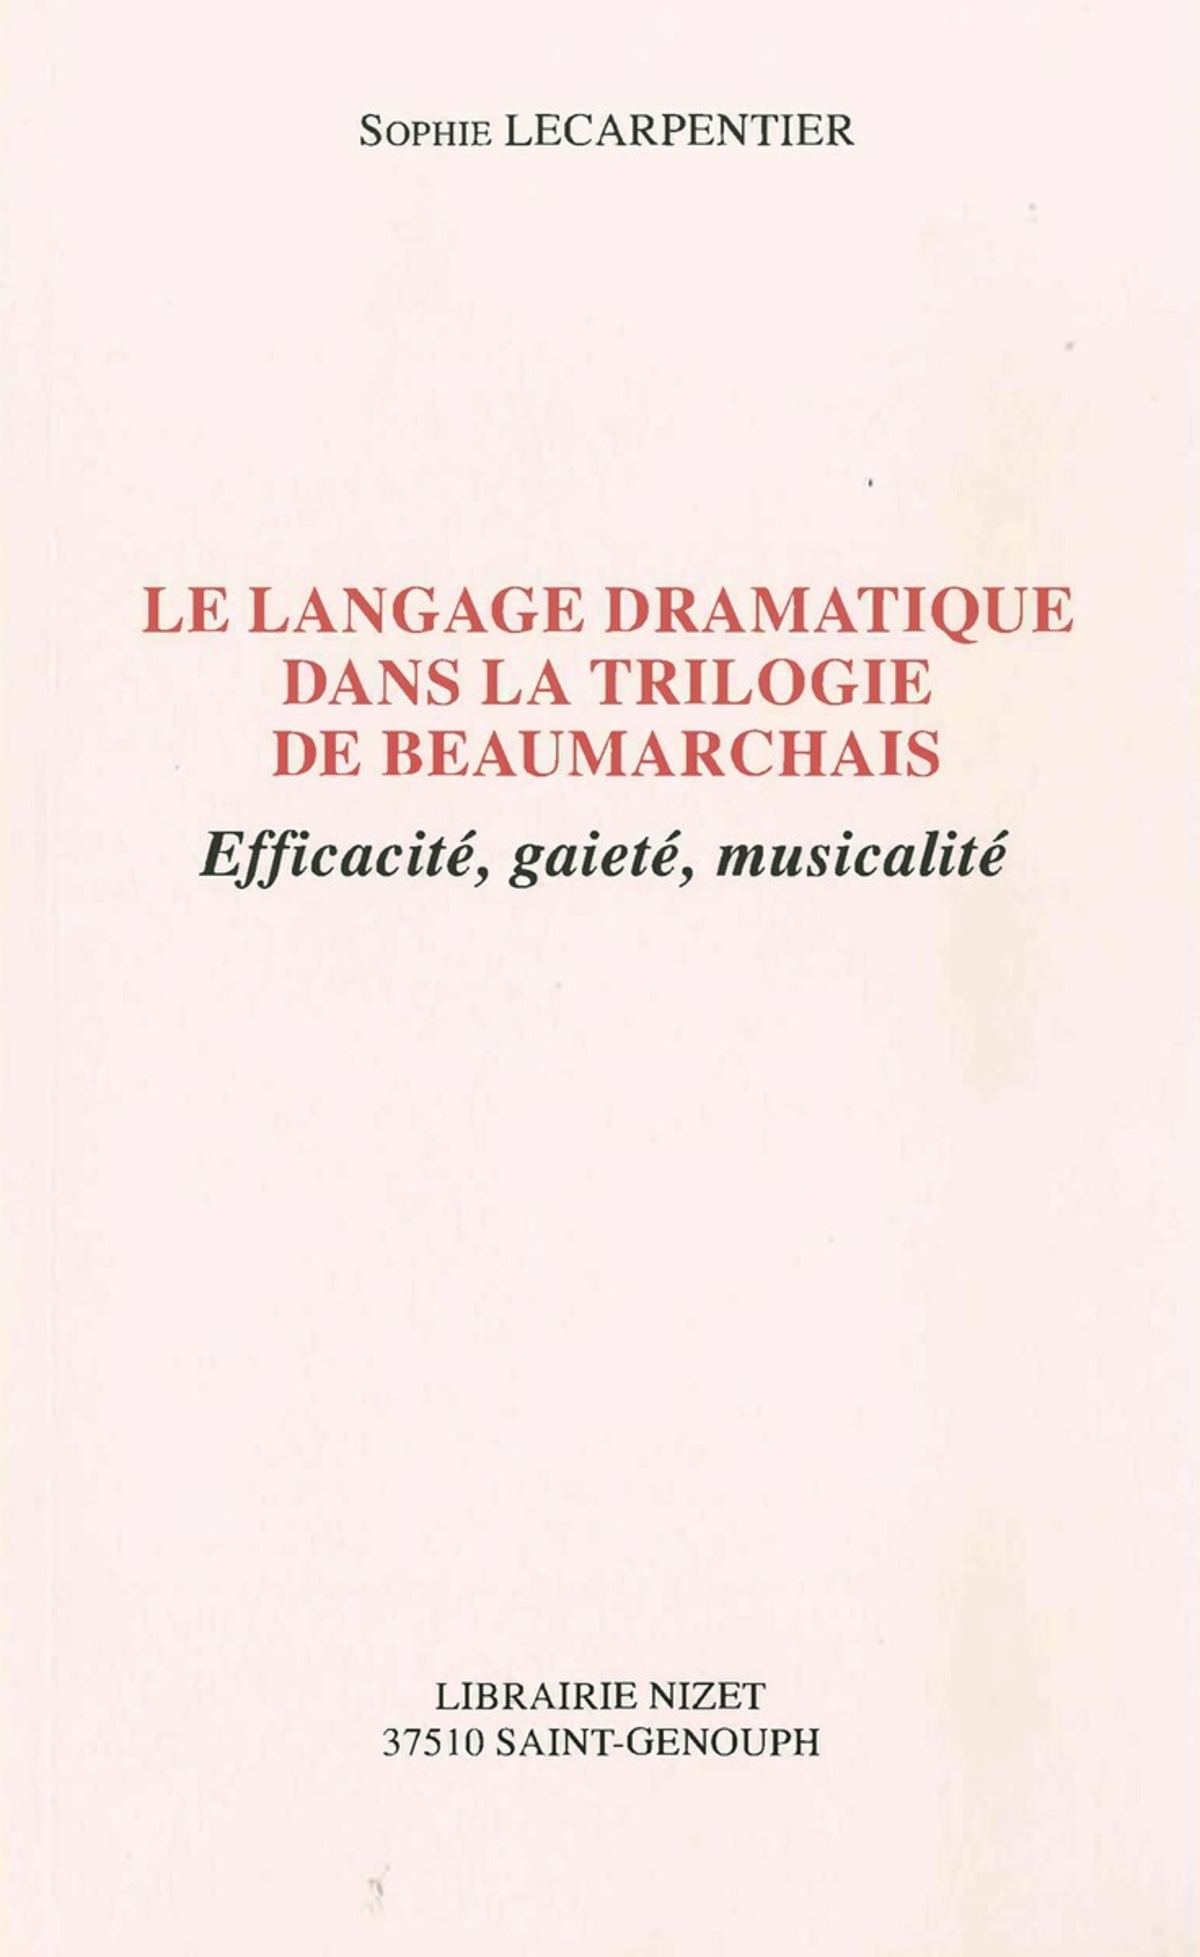 Le Langage dramatique dans la trilogie de Beaumarchais